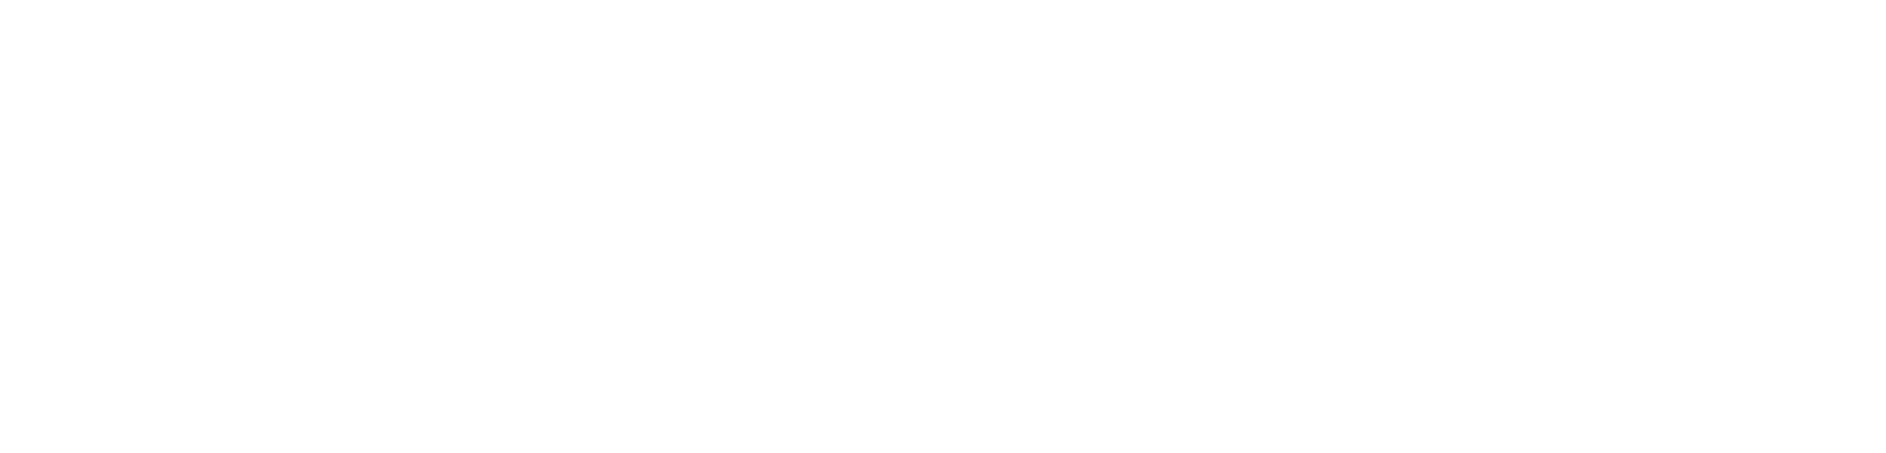 ー株式会社グッドウィンーGOODWIN Co.Ltd. / goodwin.co.jp